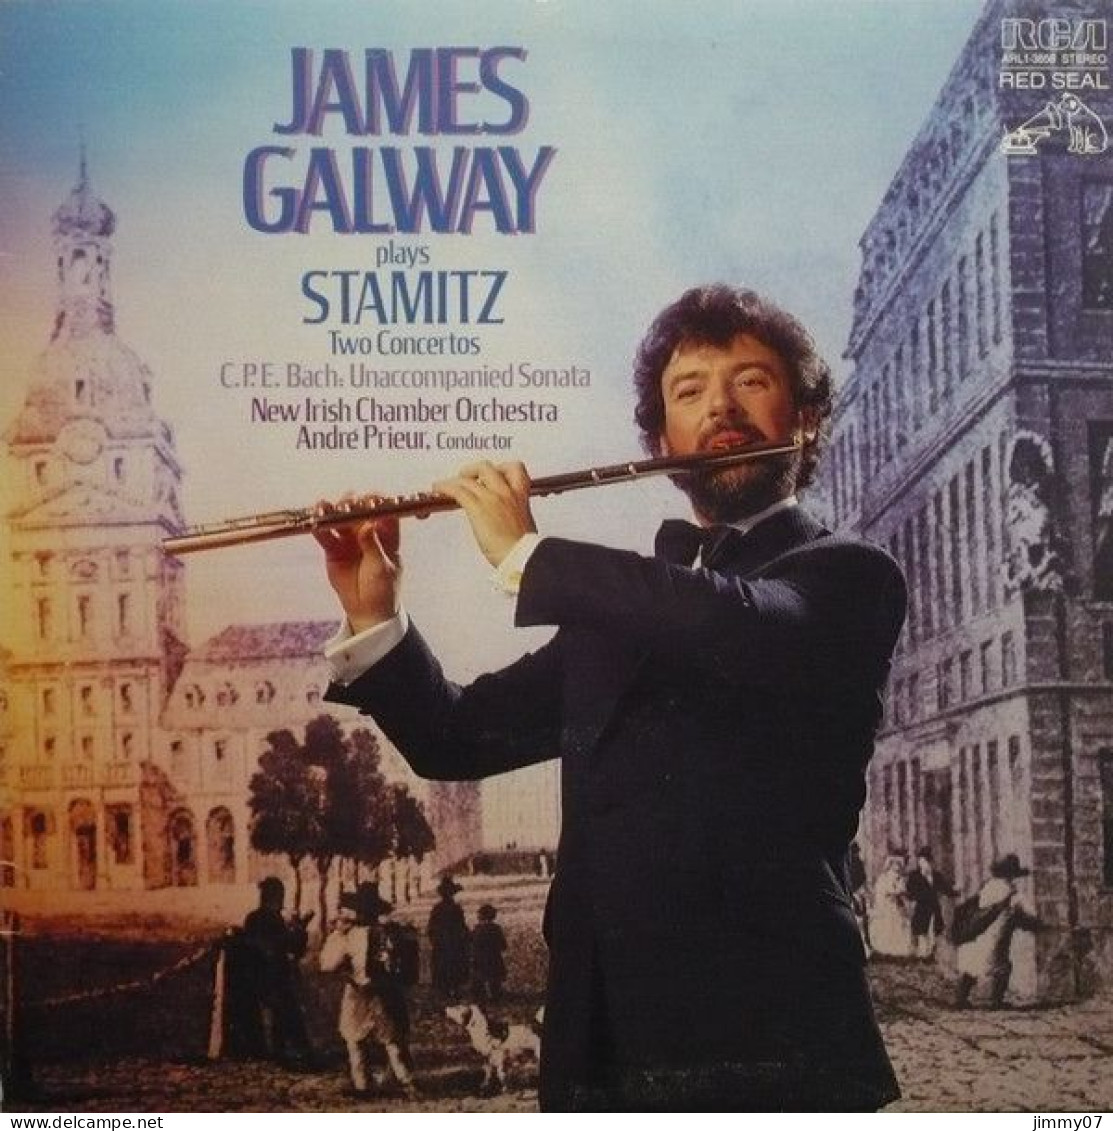 James Galway - James Galway Plays Stamitz (LP, Album) - Classical